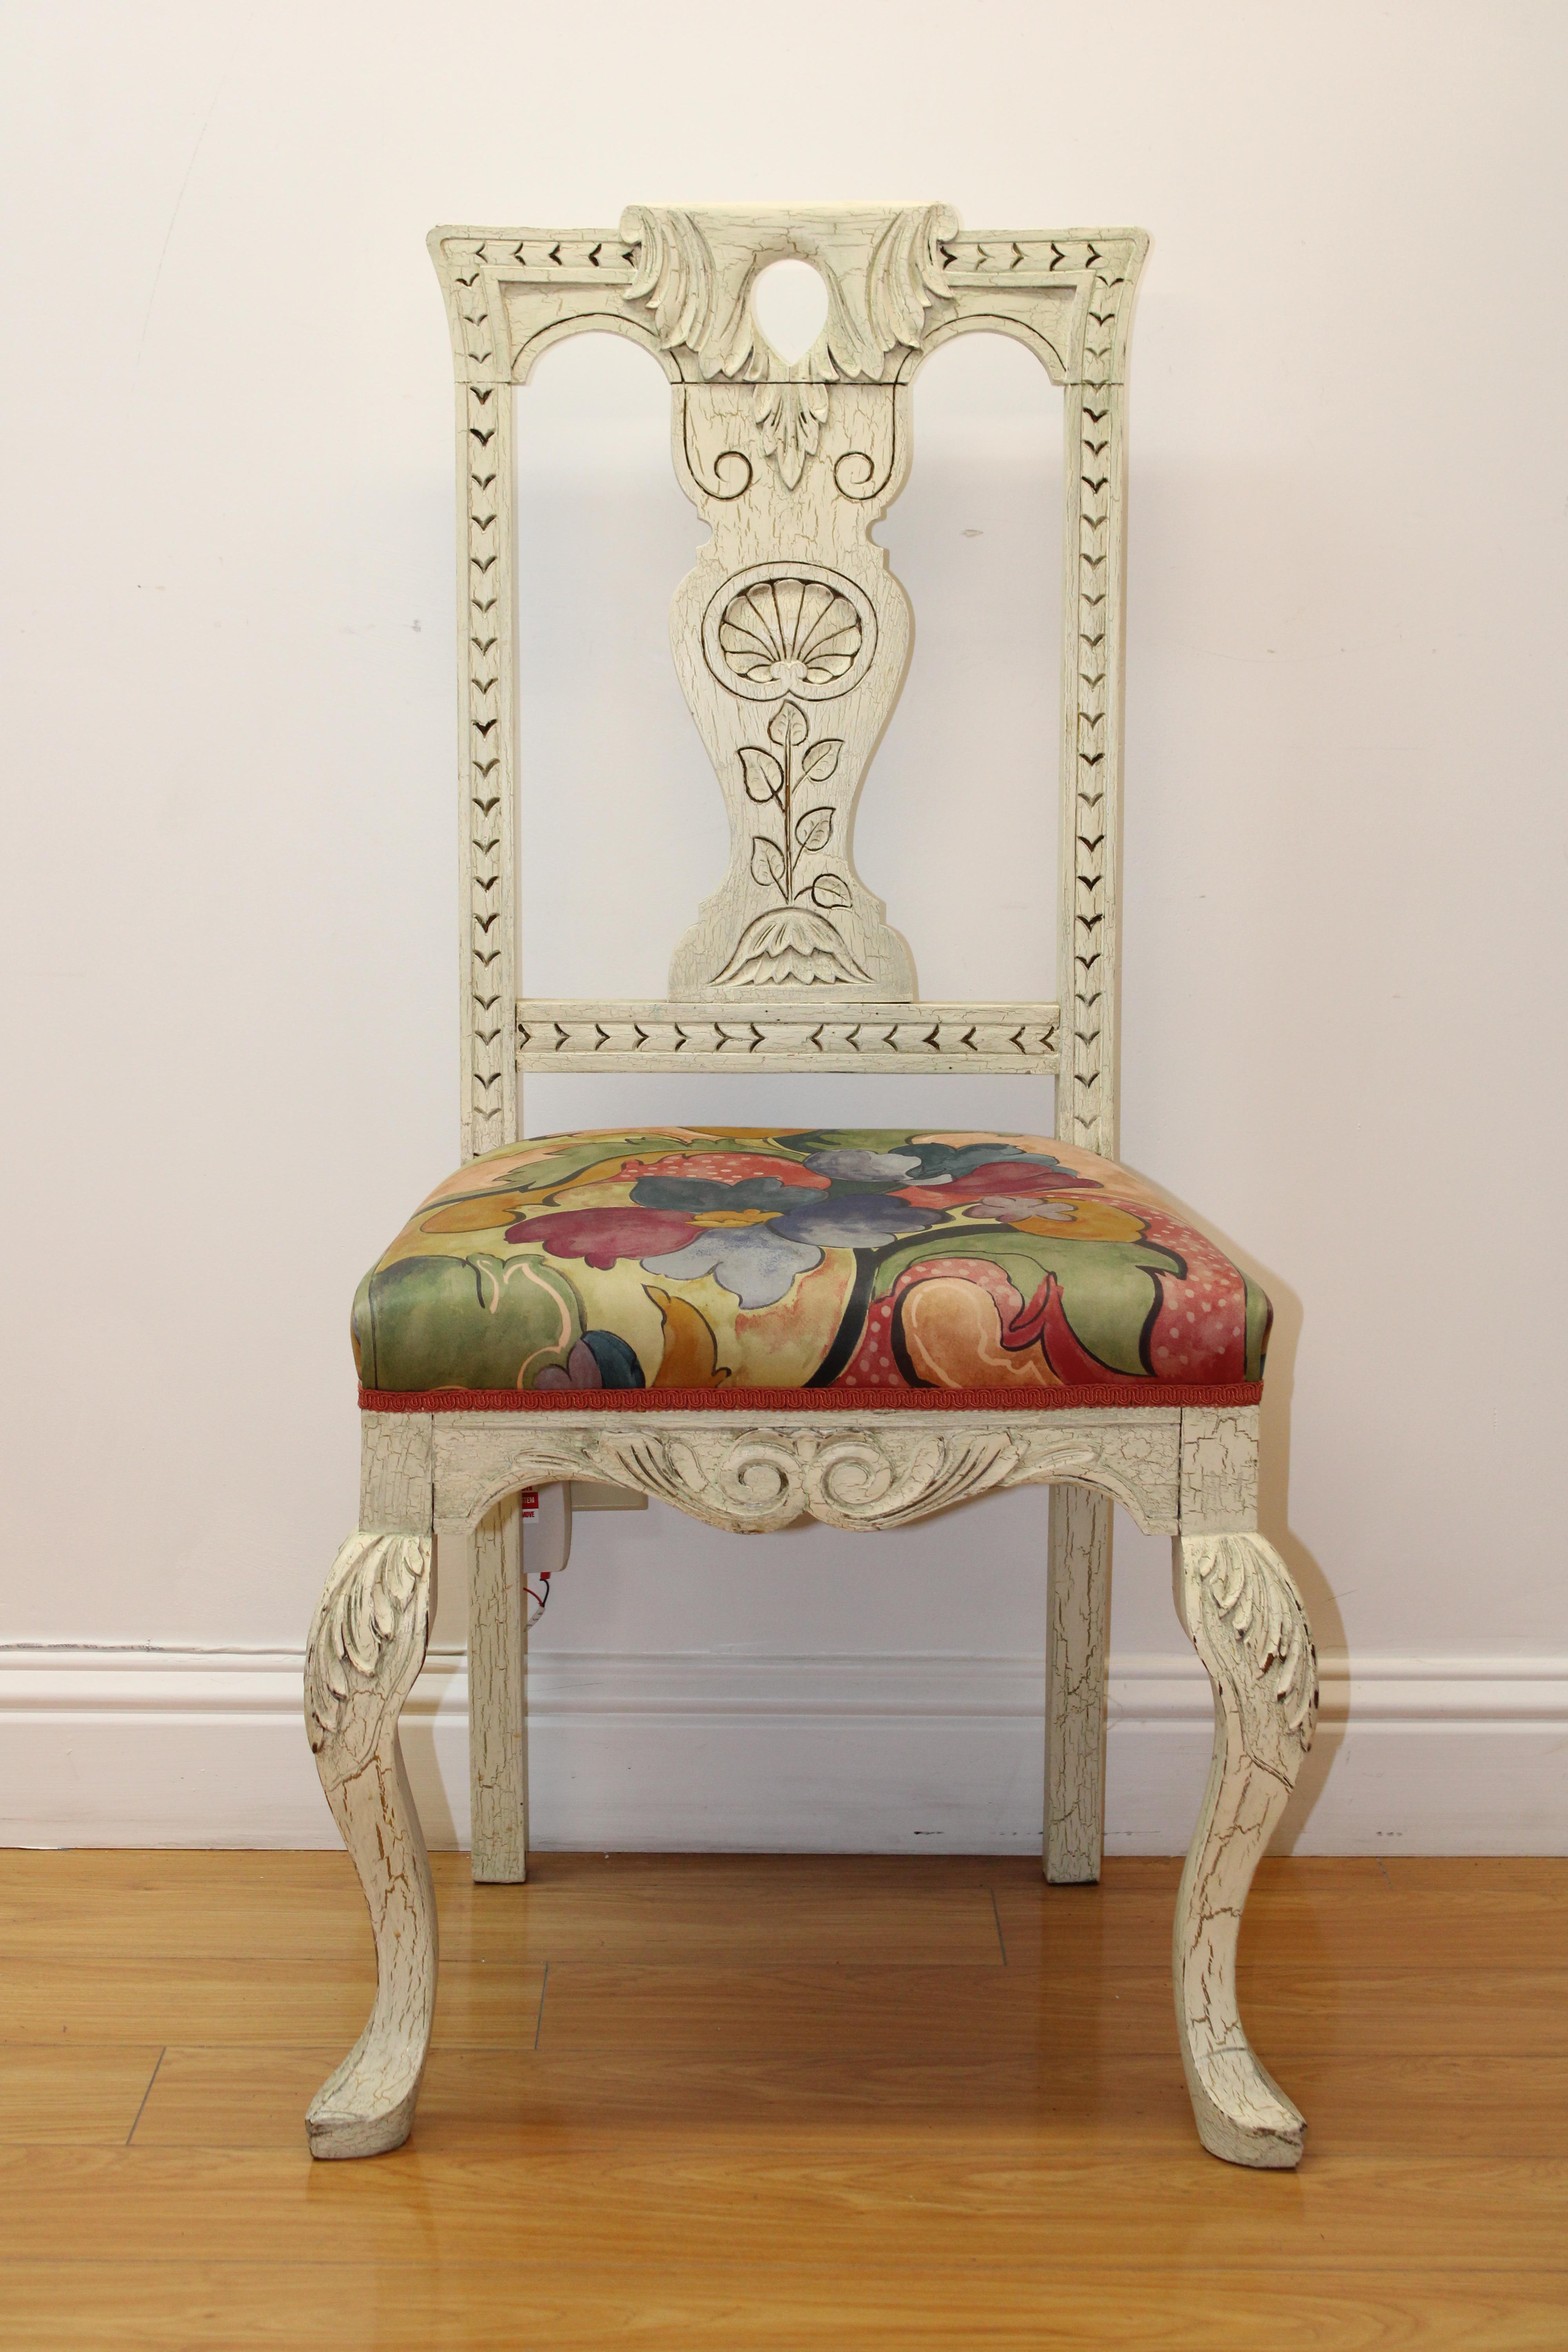 Mitte des späten 20. Jahrhunderts

Schönes und farbenfrohes Paar klassischer Beistellstühle mit weißer gewaschener Farbe und floralem Design (polsterte Sitze).